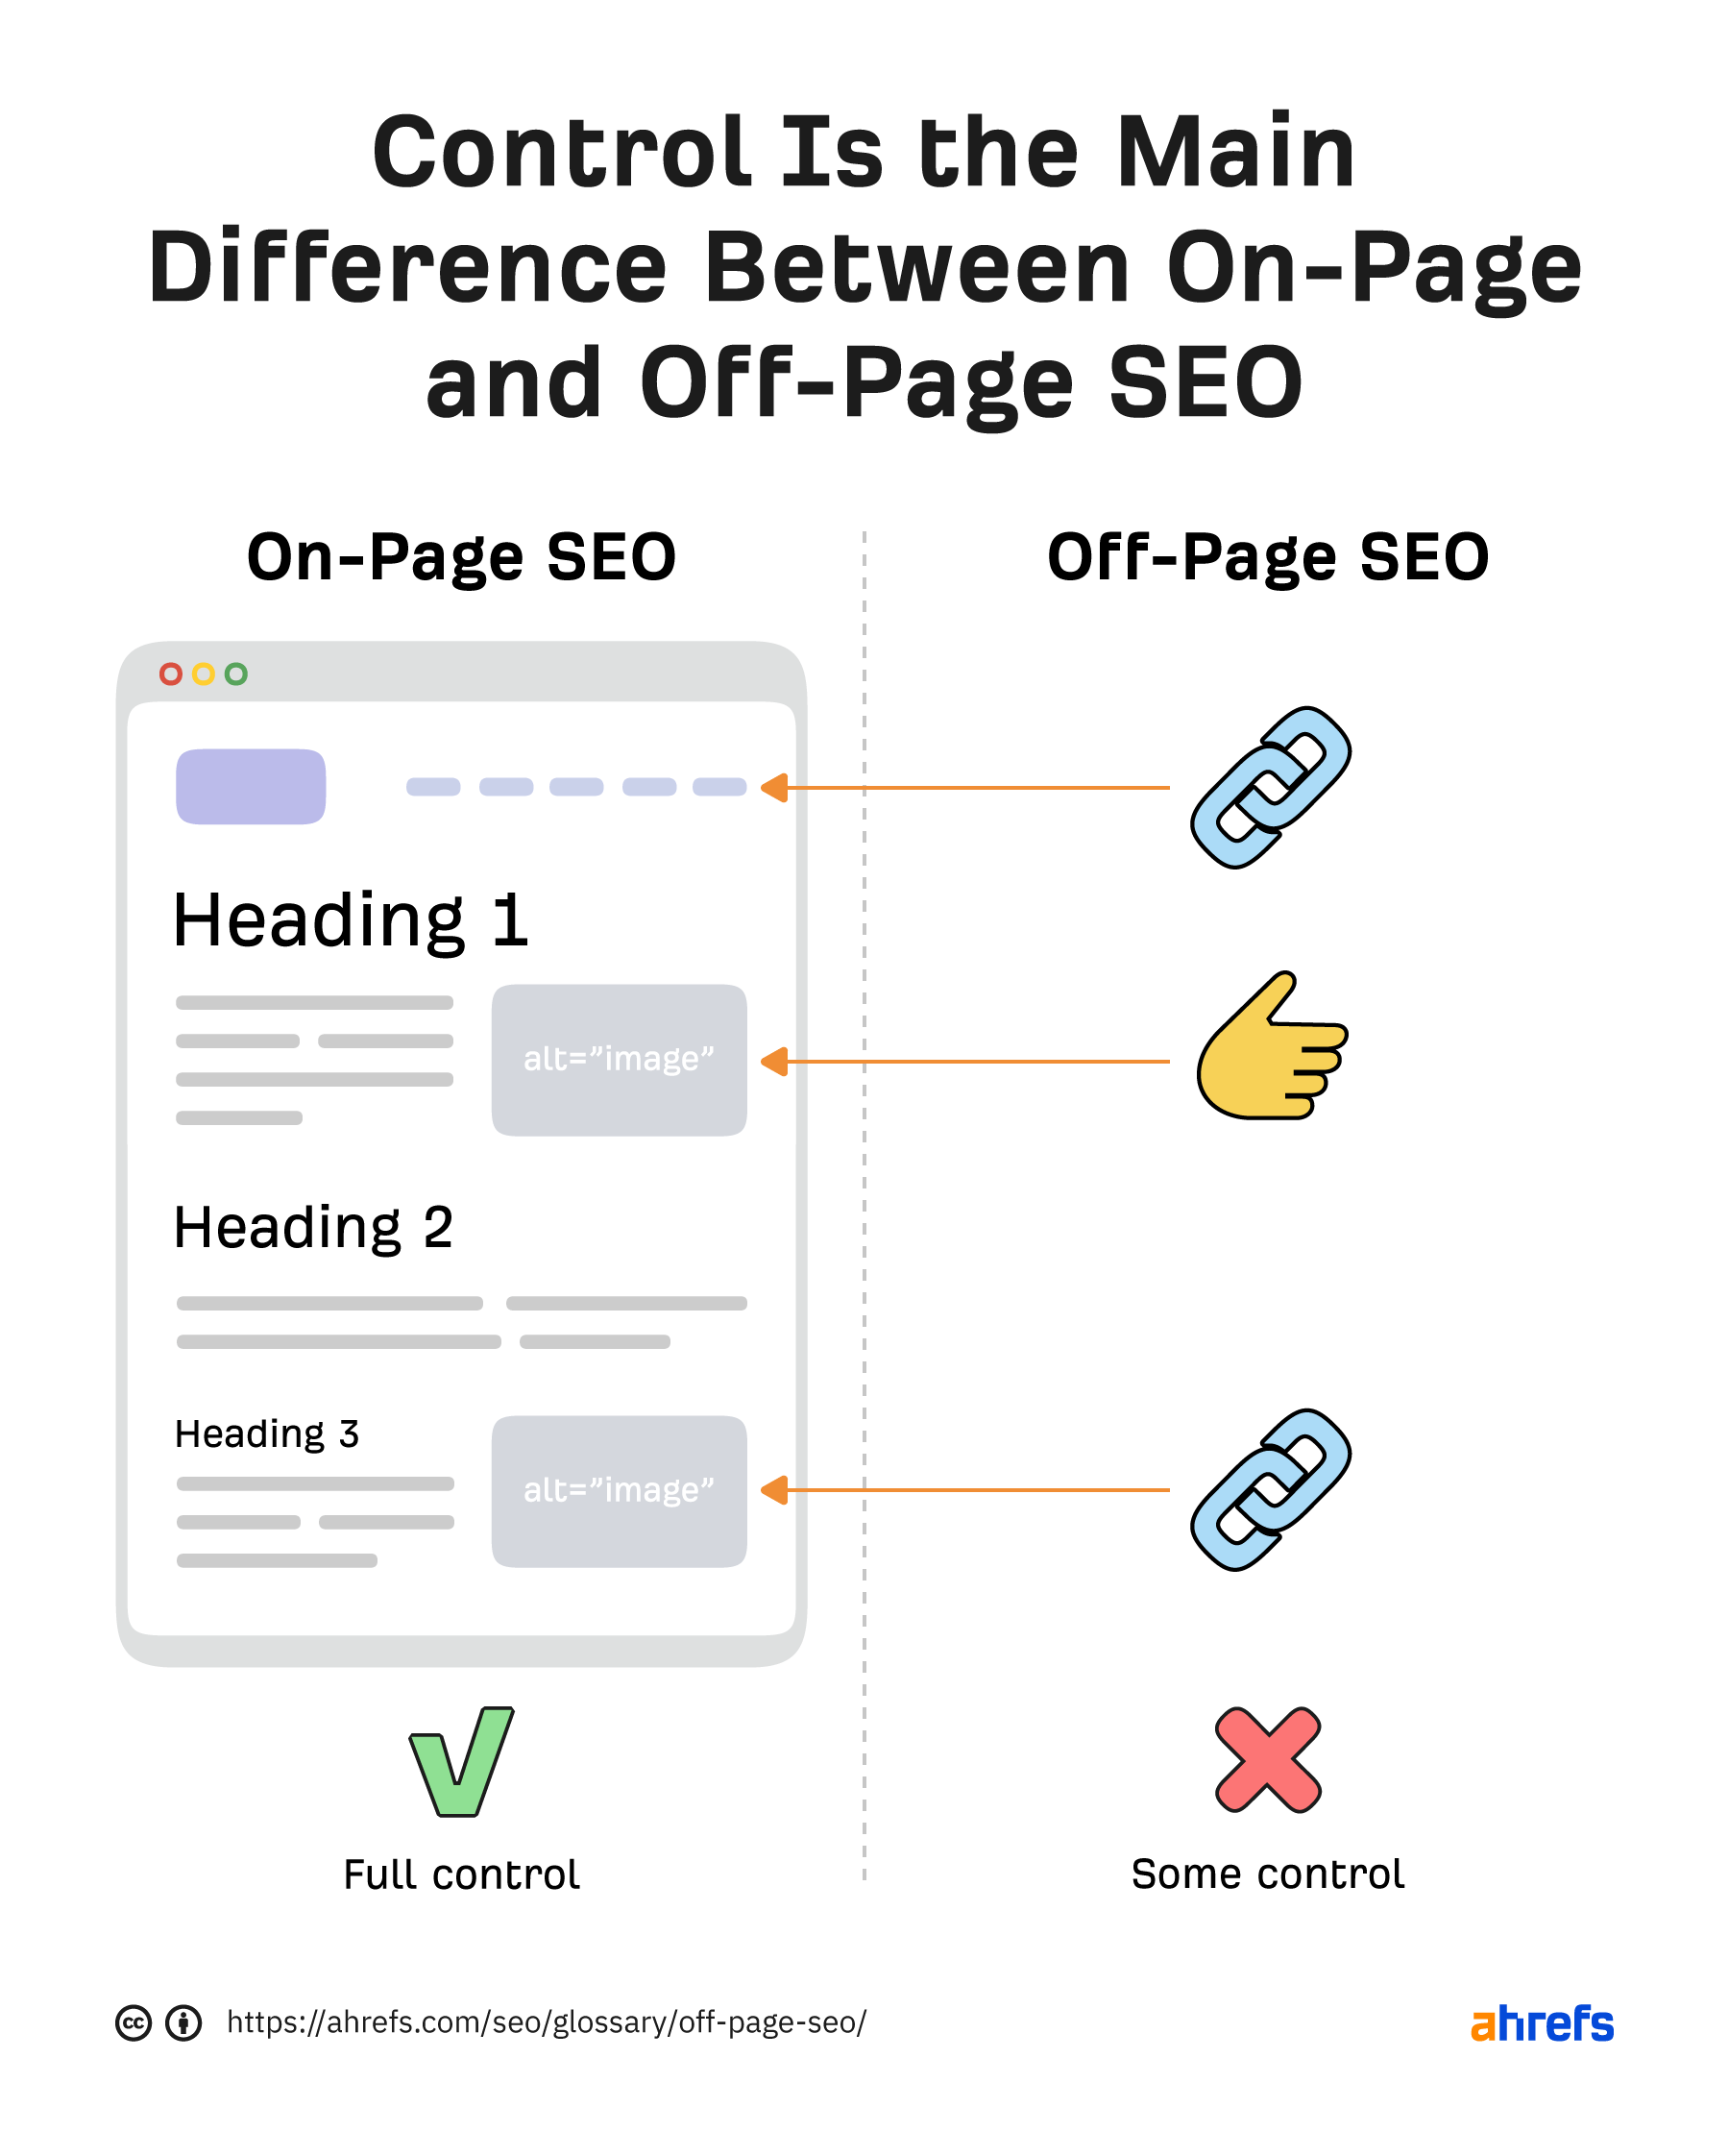 Le contrôle est la principale différence entre le référencement hors page et sur la page